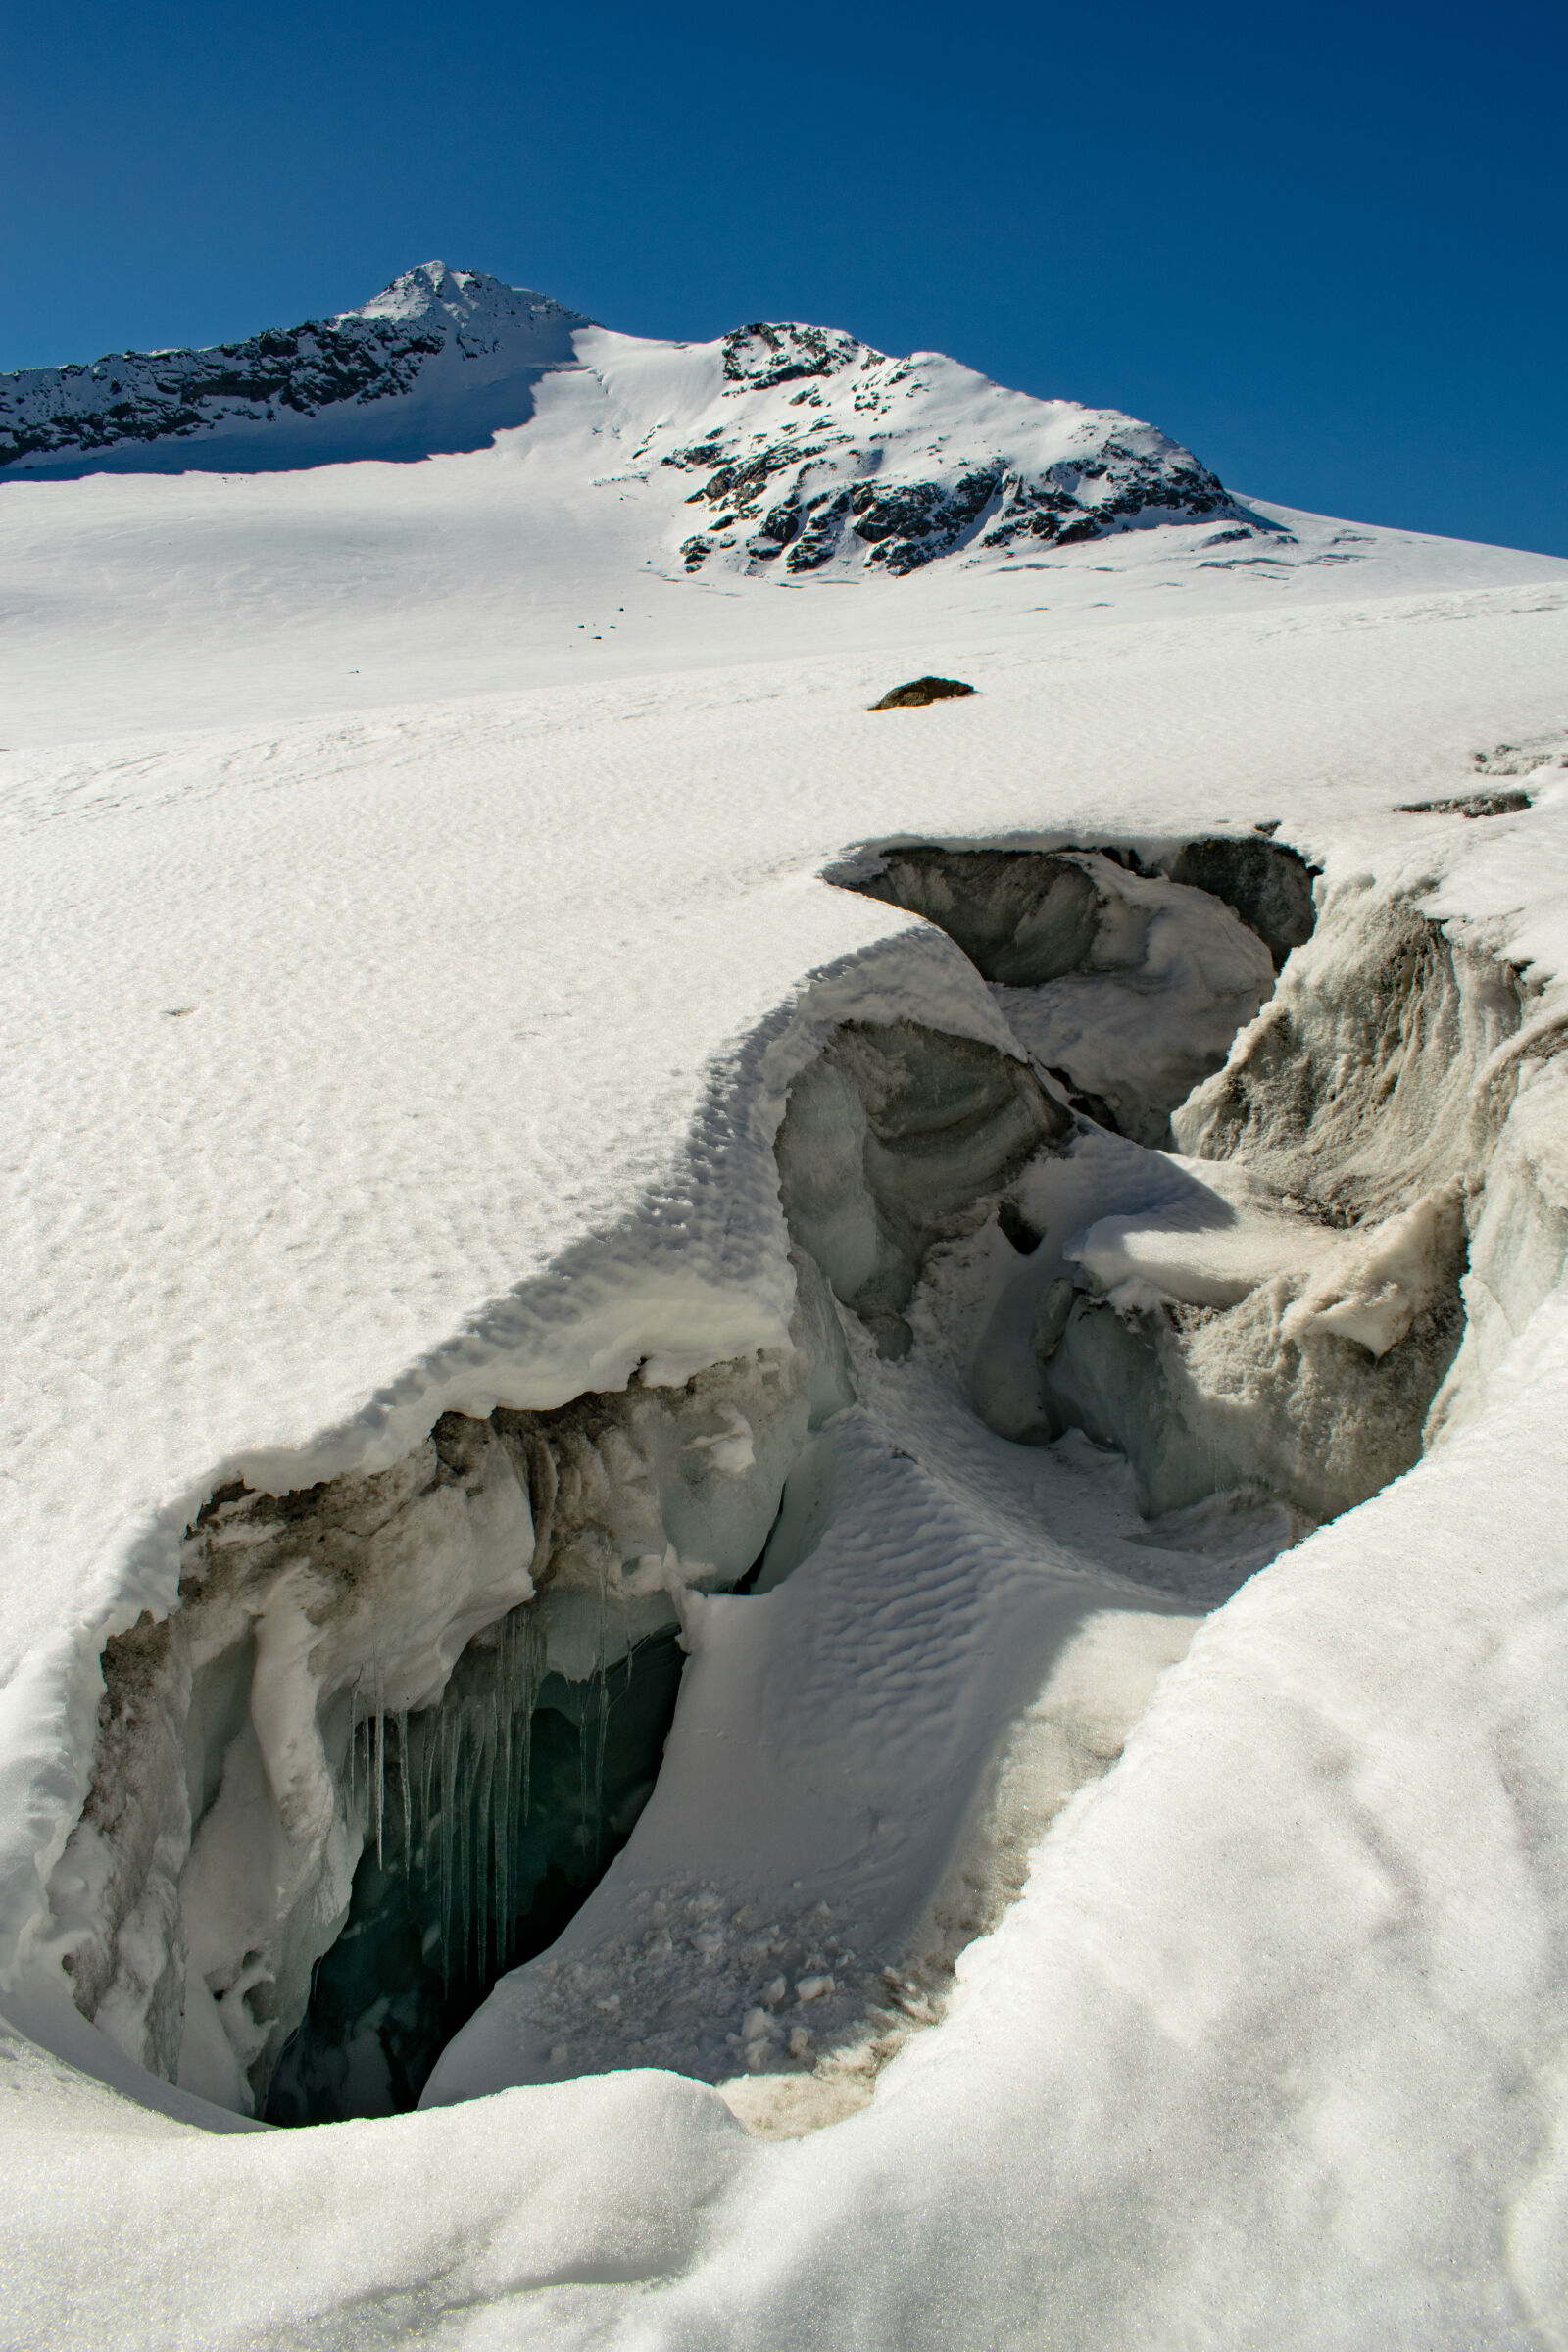 Nikon AF-S DX Nikkor 18-55mm F3.5-5.6G II sample photo. Glacier, mountain, alps, october photography